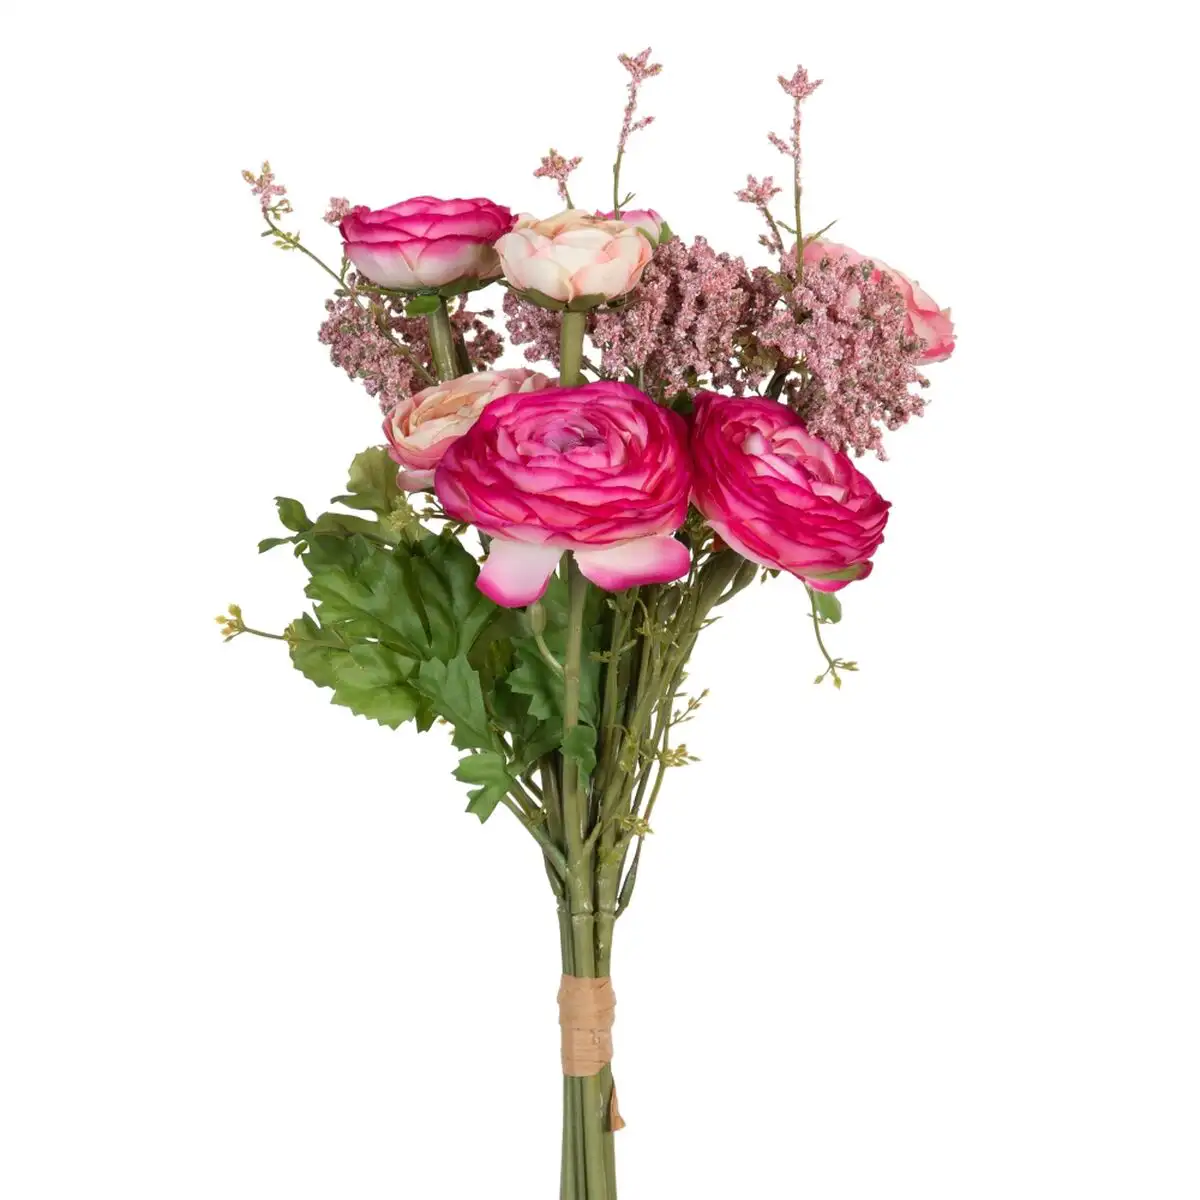 Fleurs decoratives rose 20 x 20 x 50 cm_7428. DIAYTAR SENEGAL - L'Art de Vivre le Shopping Inspiré. Parcourez notre catalogue et choisissez des produits qui reflètent votre passion pour la beauté et l'authenticité.